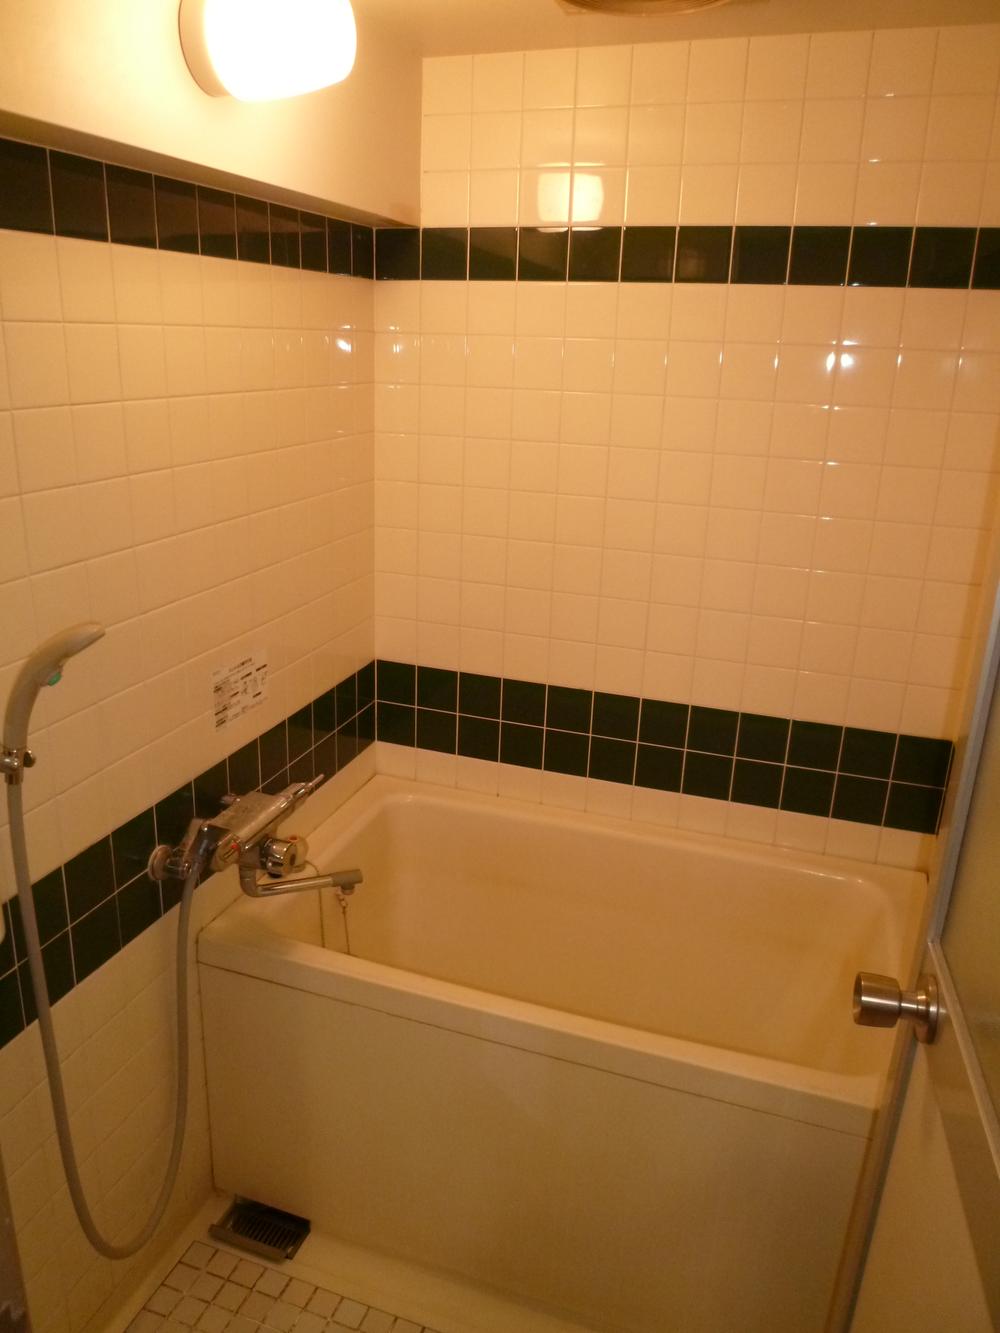 Bathroom. Shower with bathroom (tile tone)